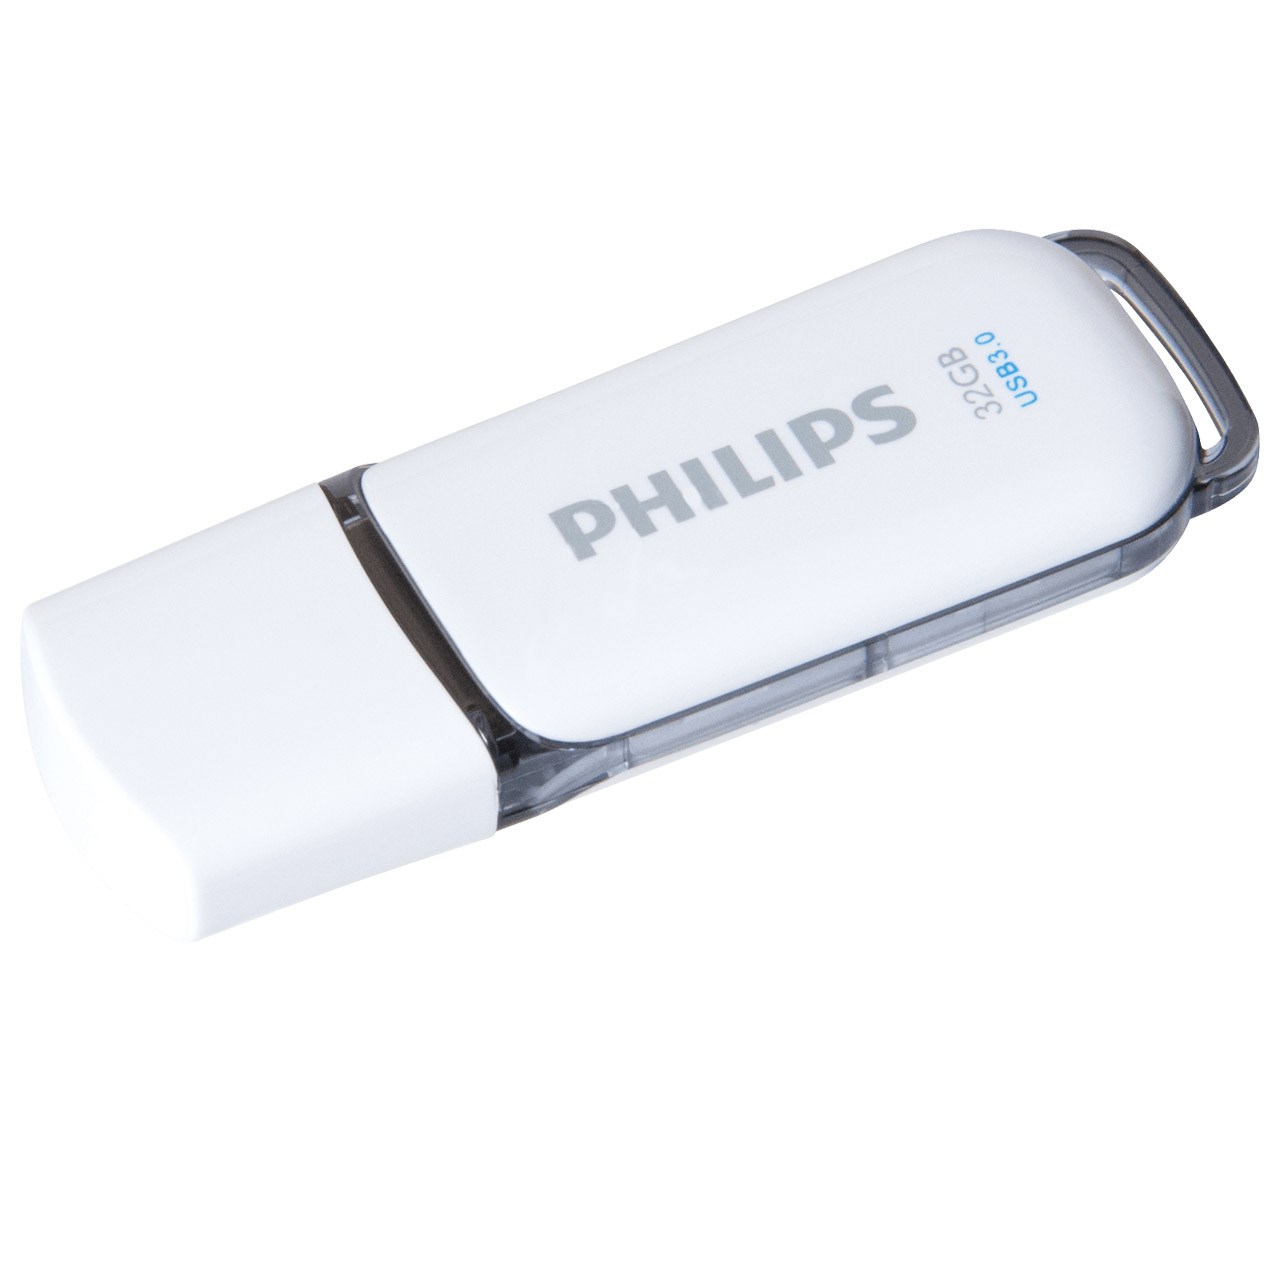 فلش مموری USB 3.0 فیلیپس مدل Snow Edition ظرفیت 32 گیگابایت